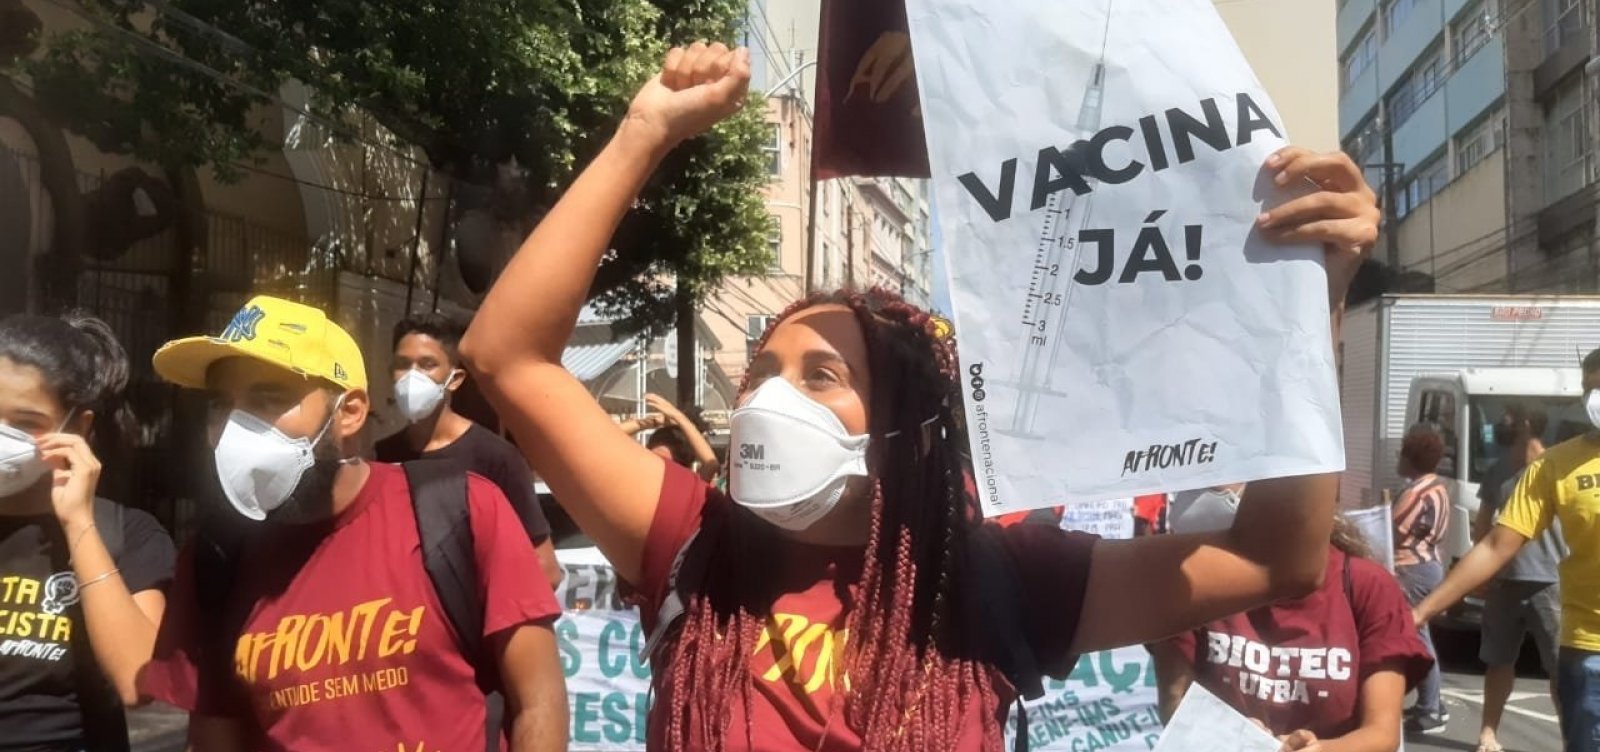 Protestos contra Bolsonaro acontecem em Salvador e em cidades do interior neste sábado